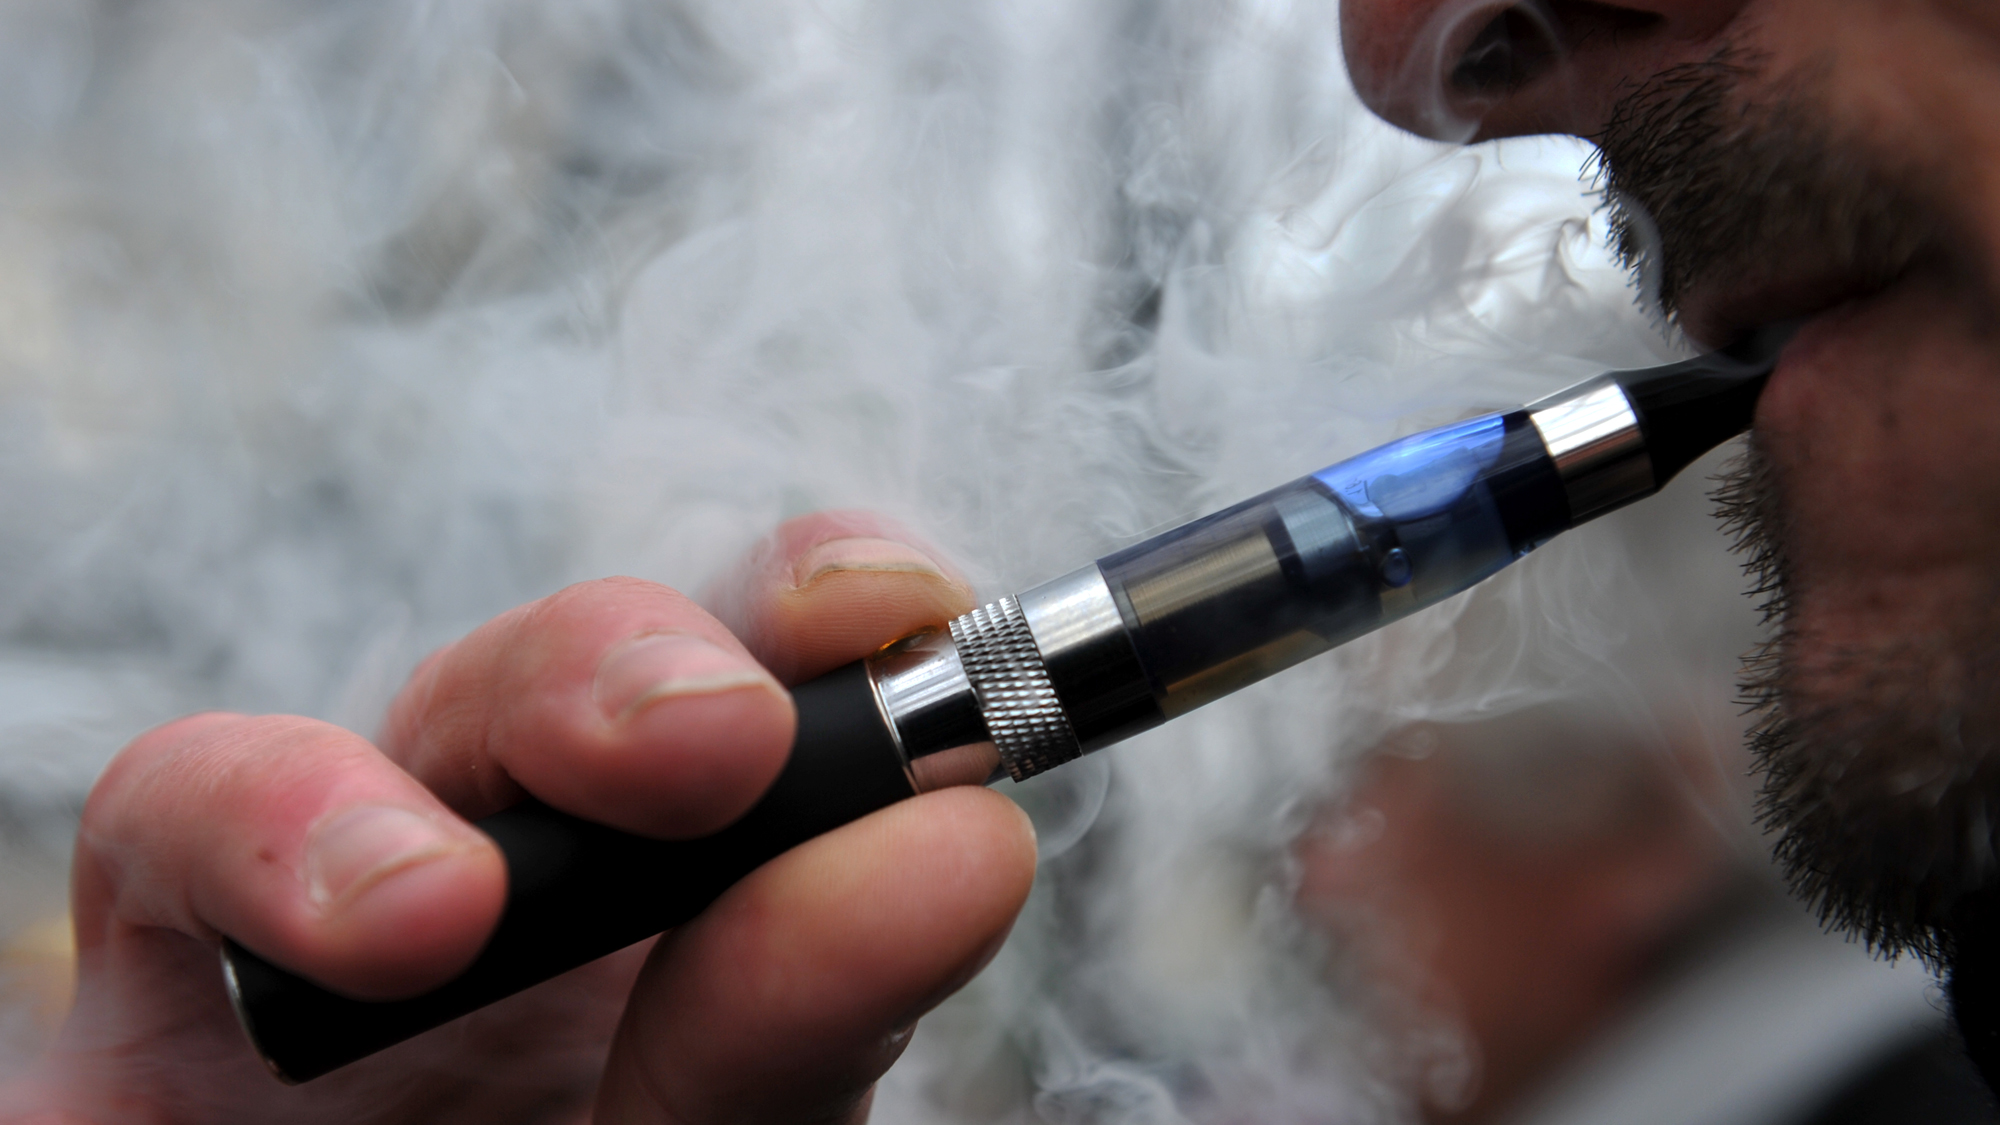 Wie gefährlich sind E-Zigaretten und Co.?